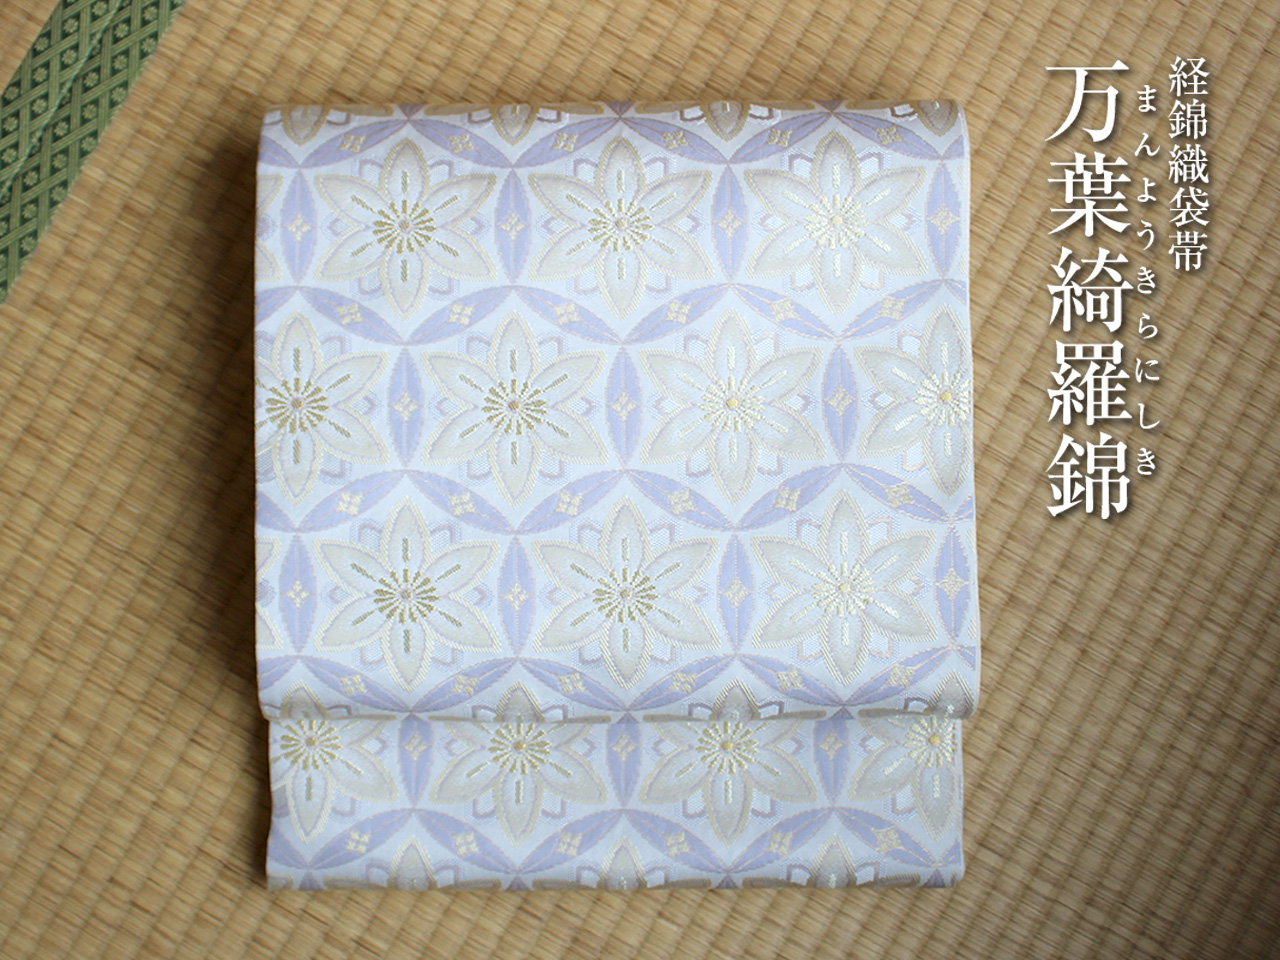 東京ますいわ屋 袋帯16 幅30.5cm 長さ358cm-